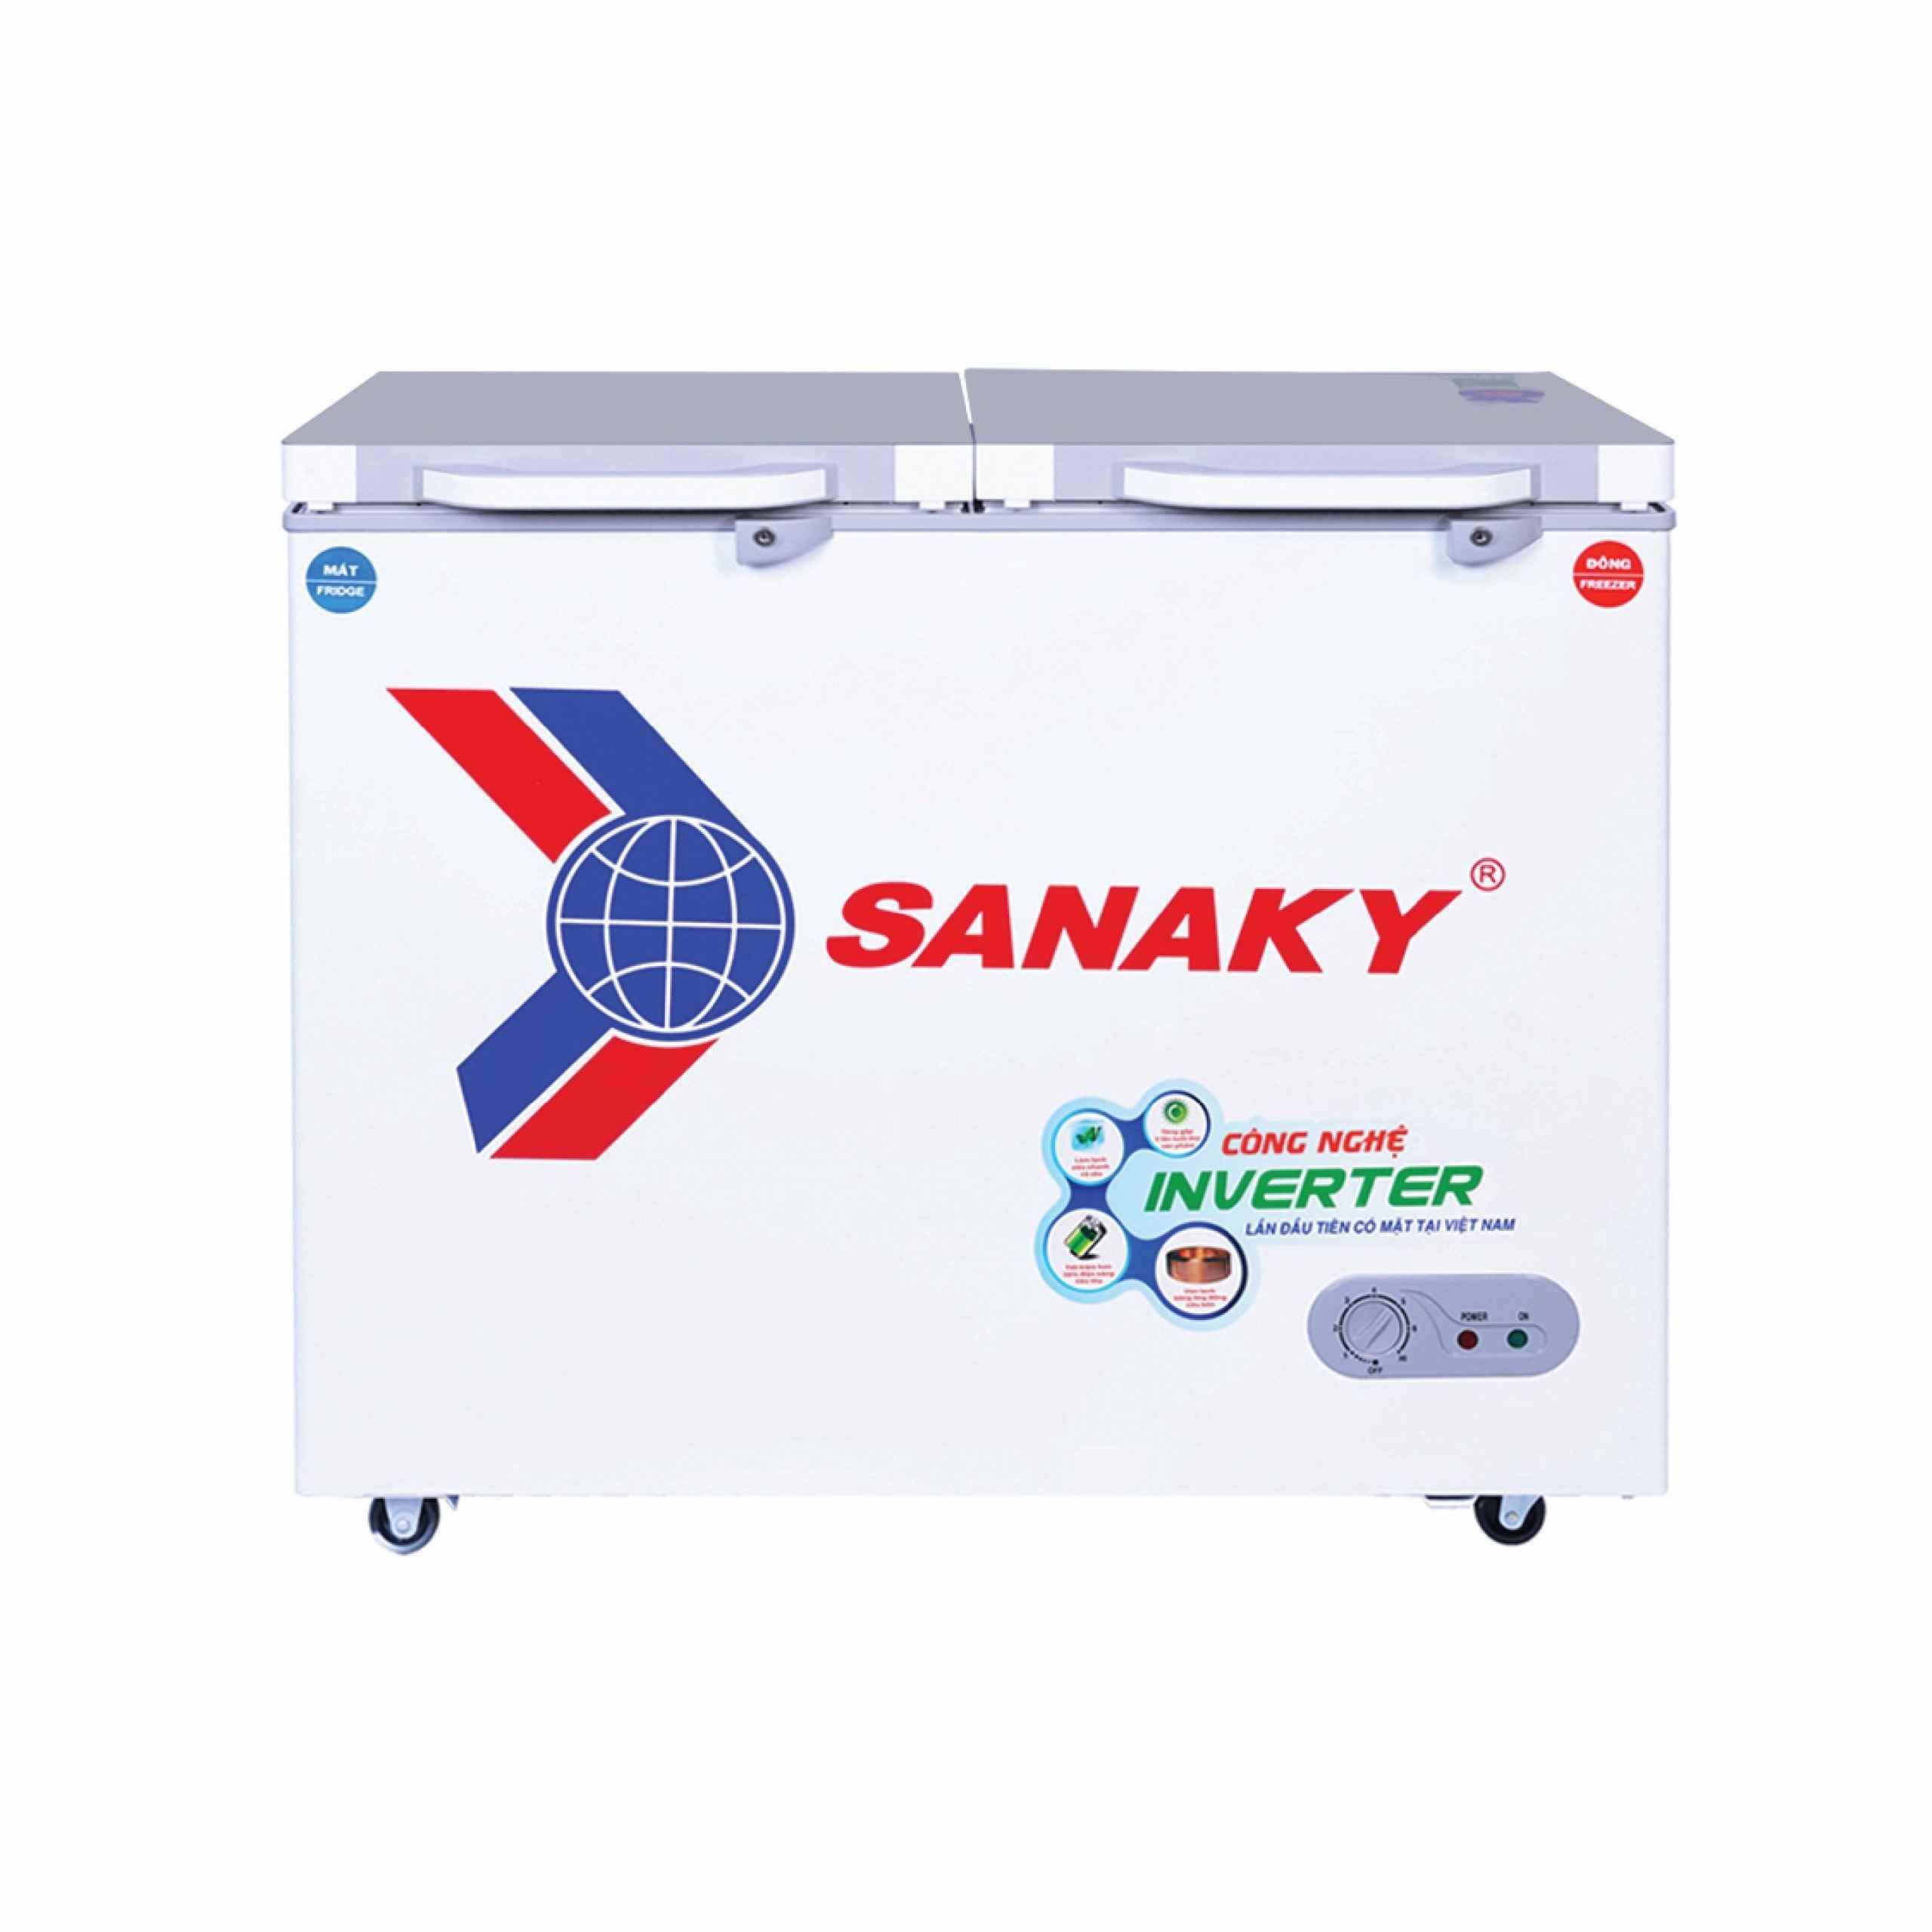 Tủ đông Sanaky Inverter 195 lít VH-2599W4K 2 ngăn - Chính hãng